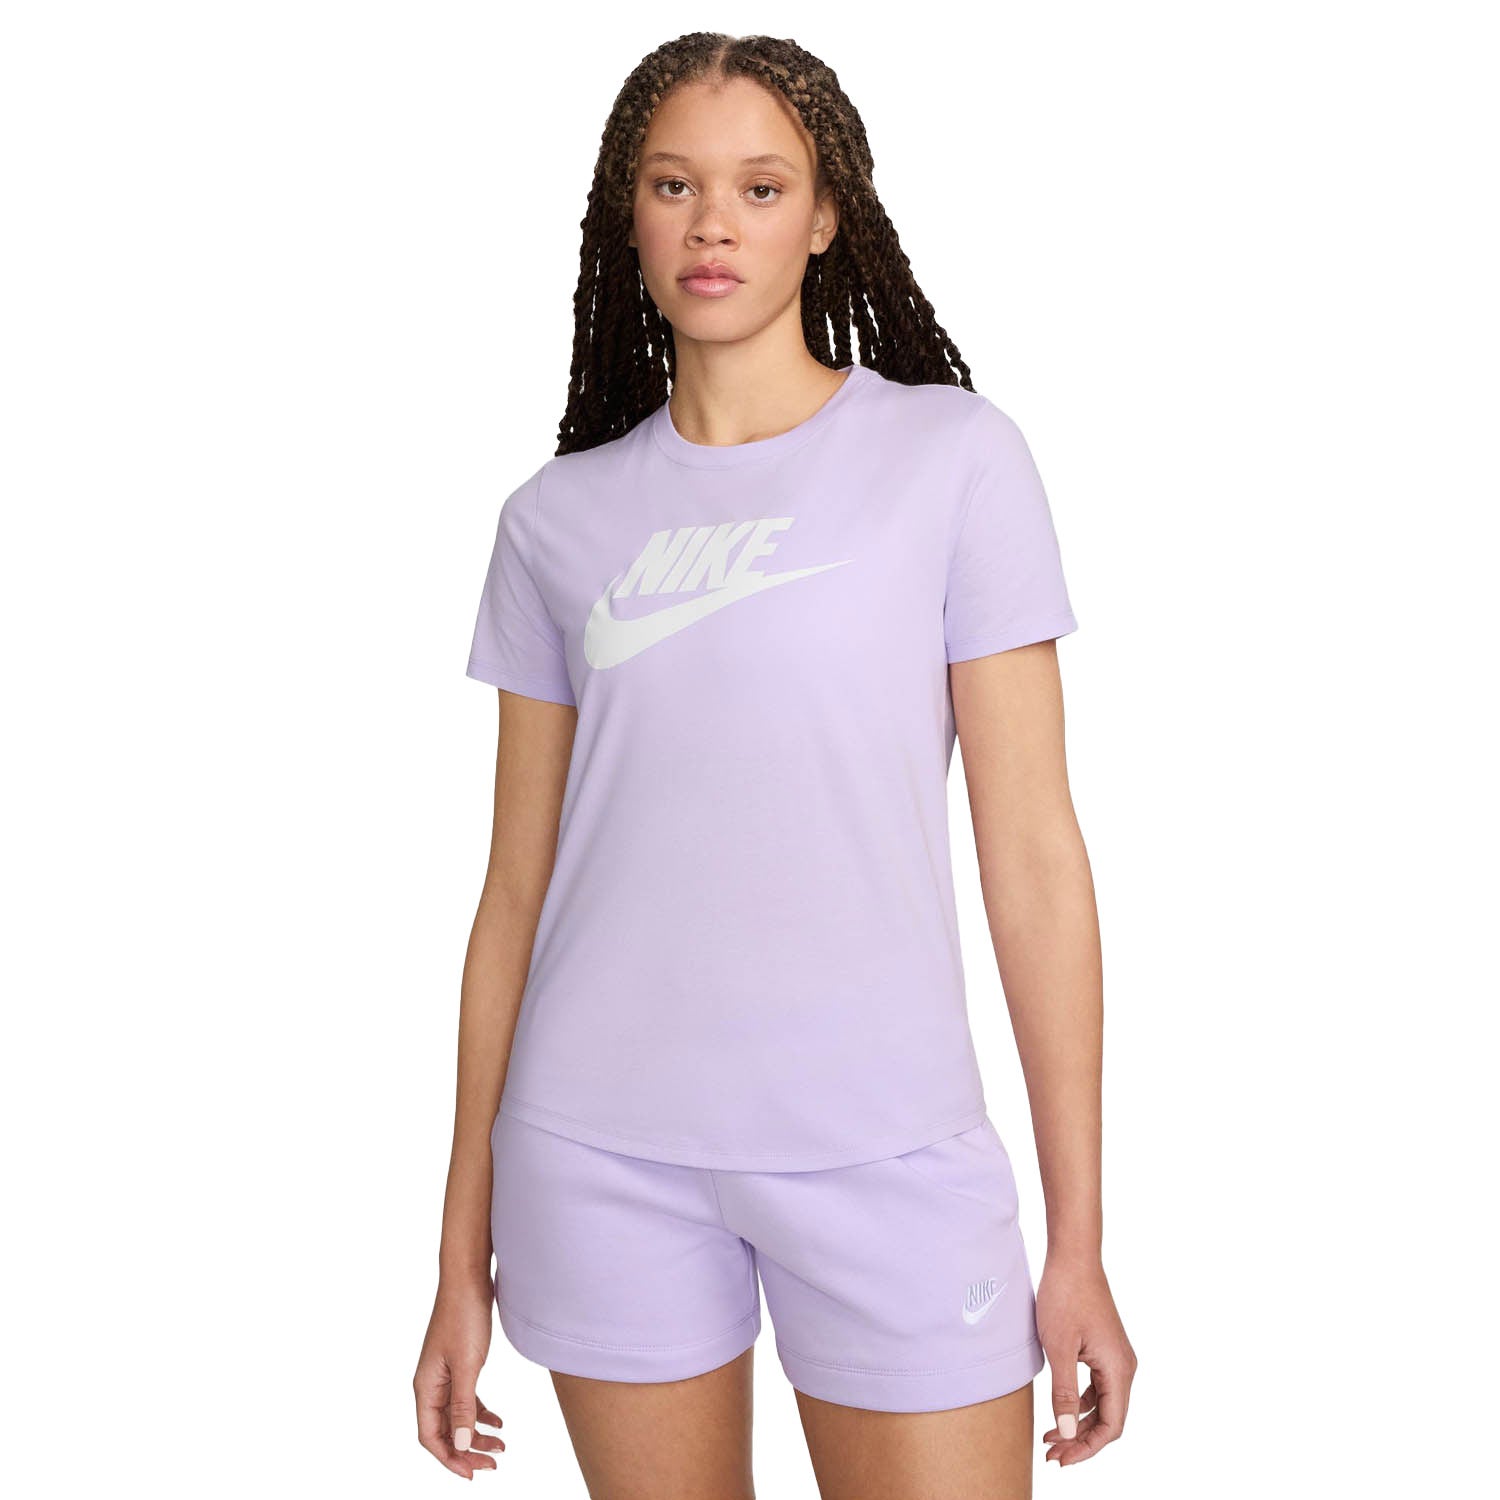 NIKE Sportswear Essentials Logo T-Shirt Damen 545 - violet mist/white